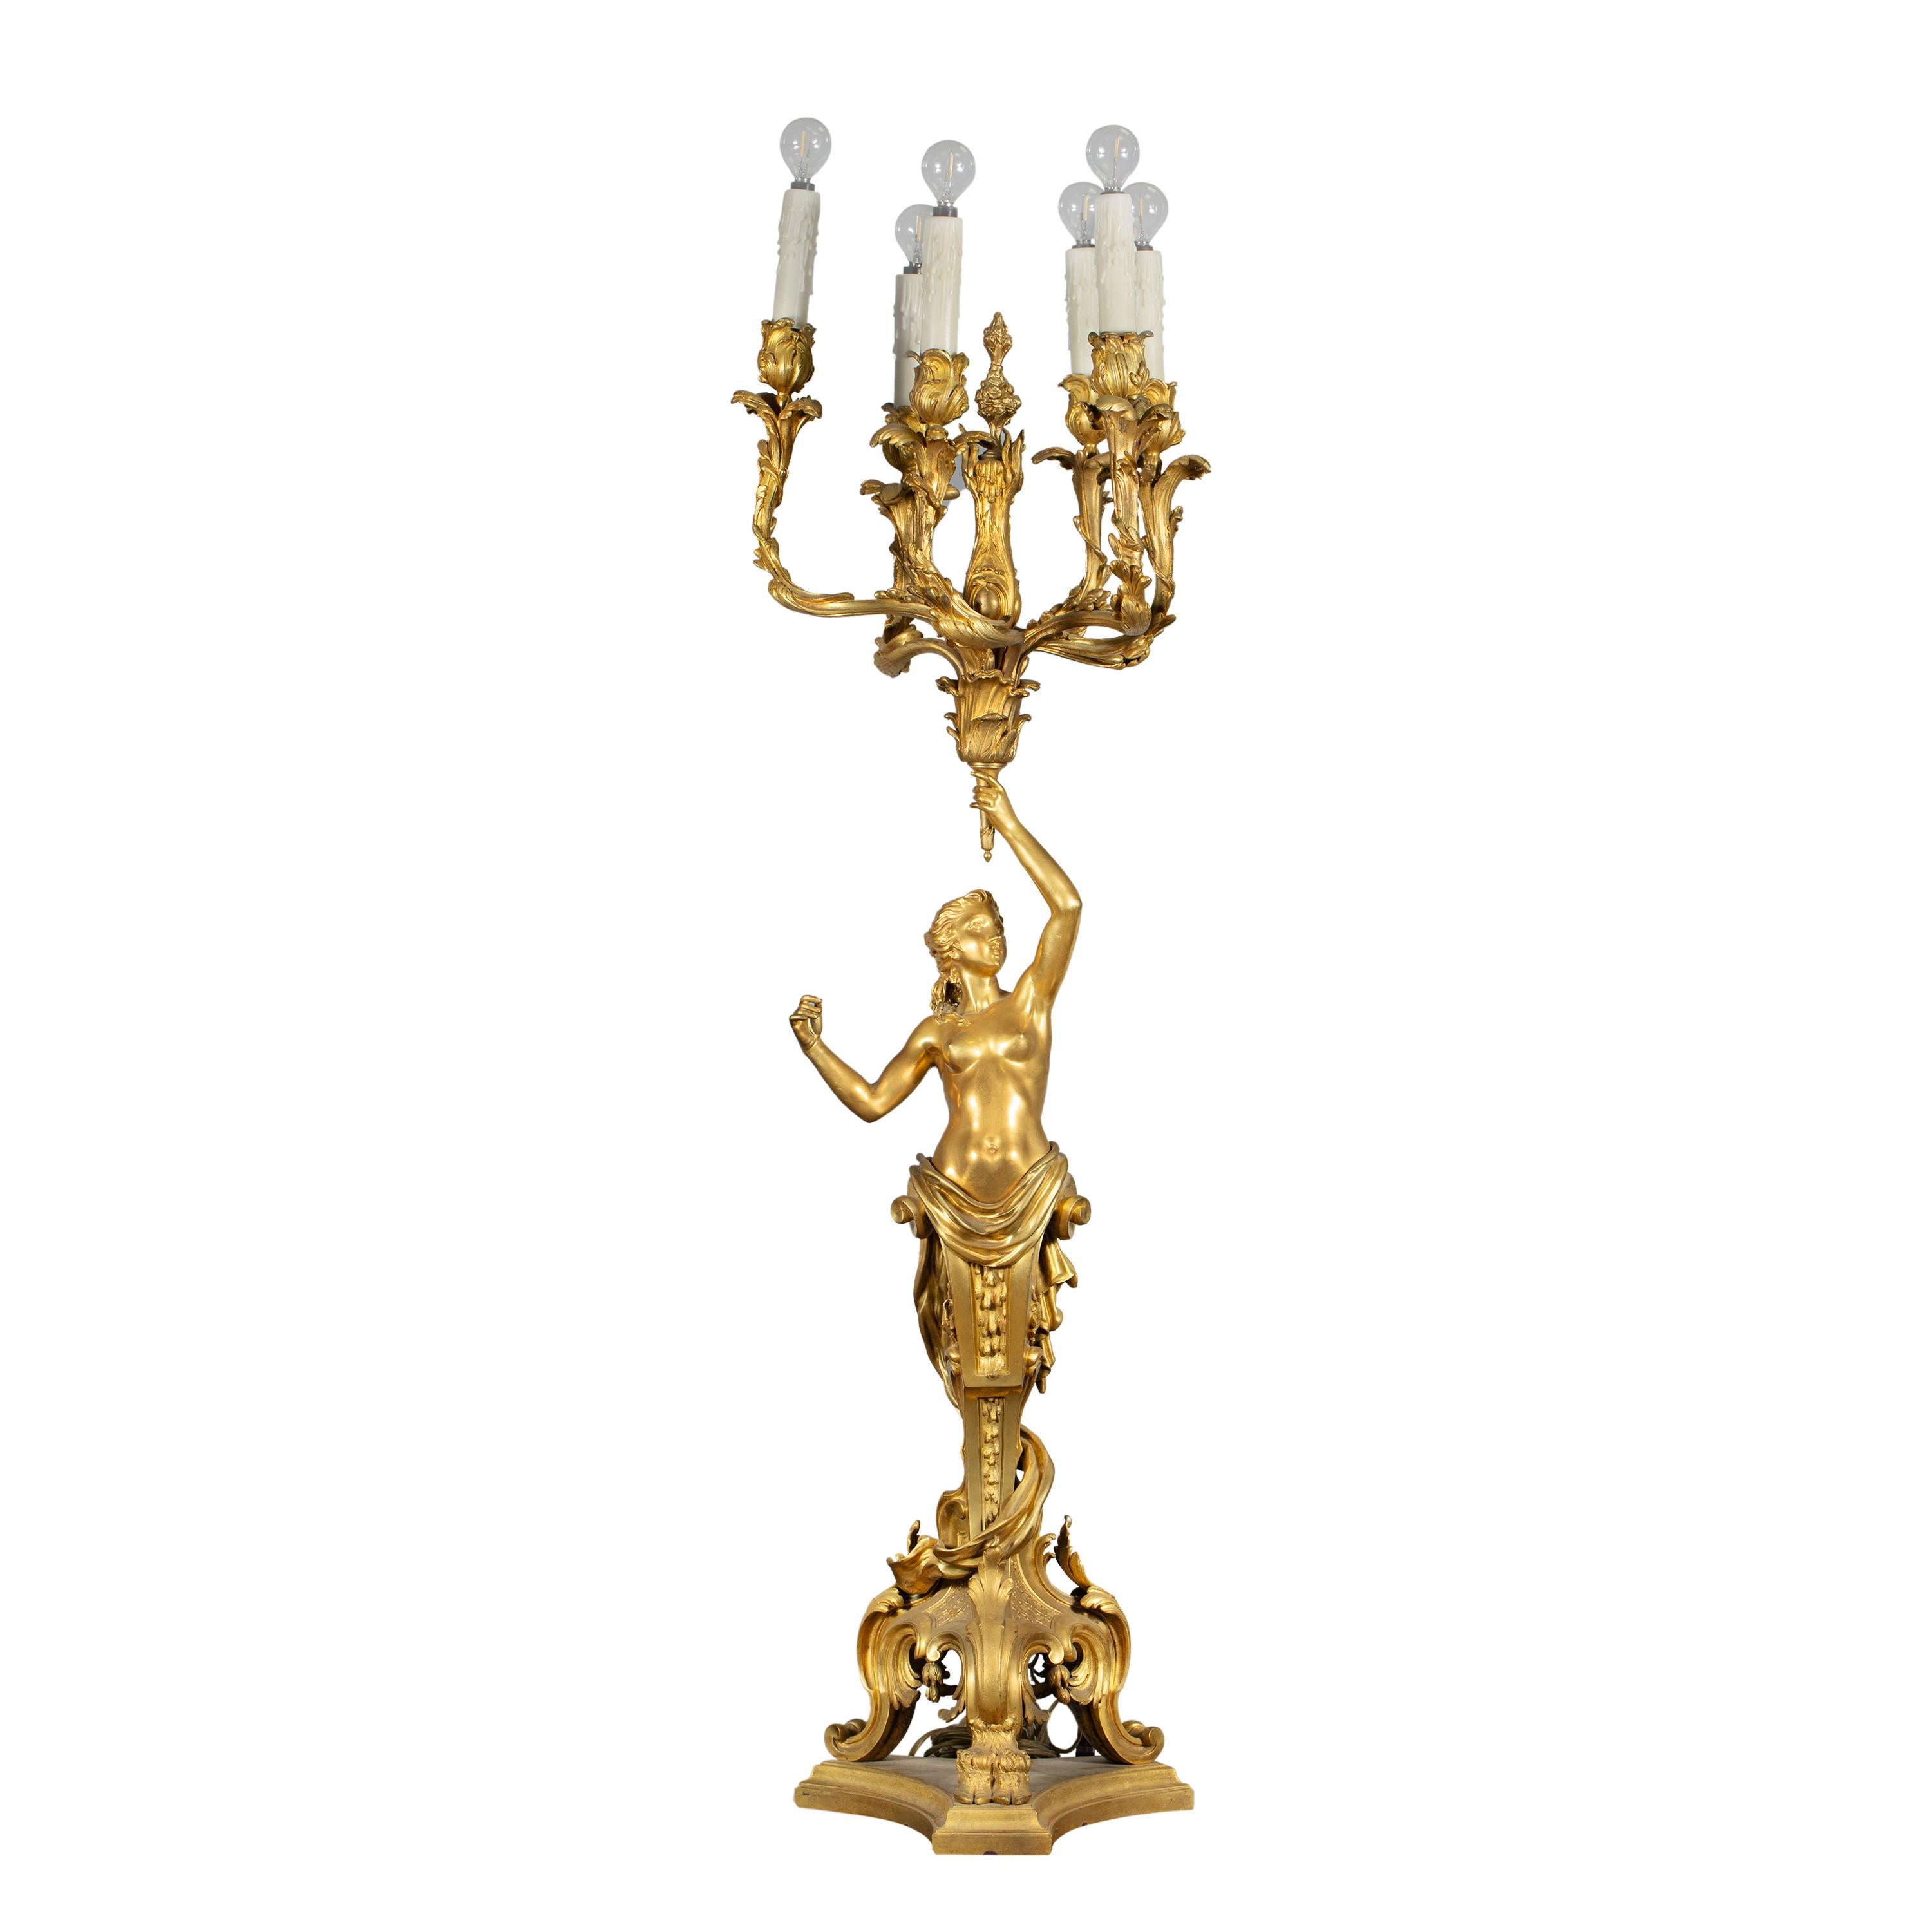 Une pièce grandiose en effet ! Ce grand candélabre à cinq branches en bronze doré, réalisé au XIXe siècle, s'inspire des modèles créés par Claude Michel Clodion. Connu pour son design et son art complexes, le candélabre présente des détails